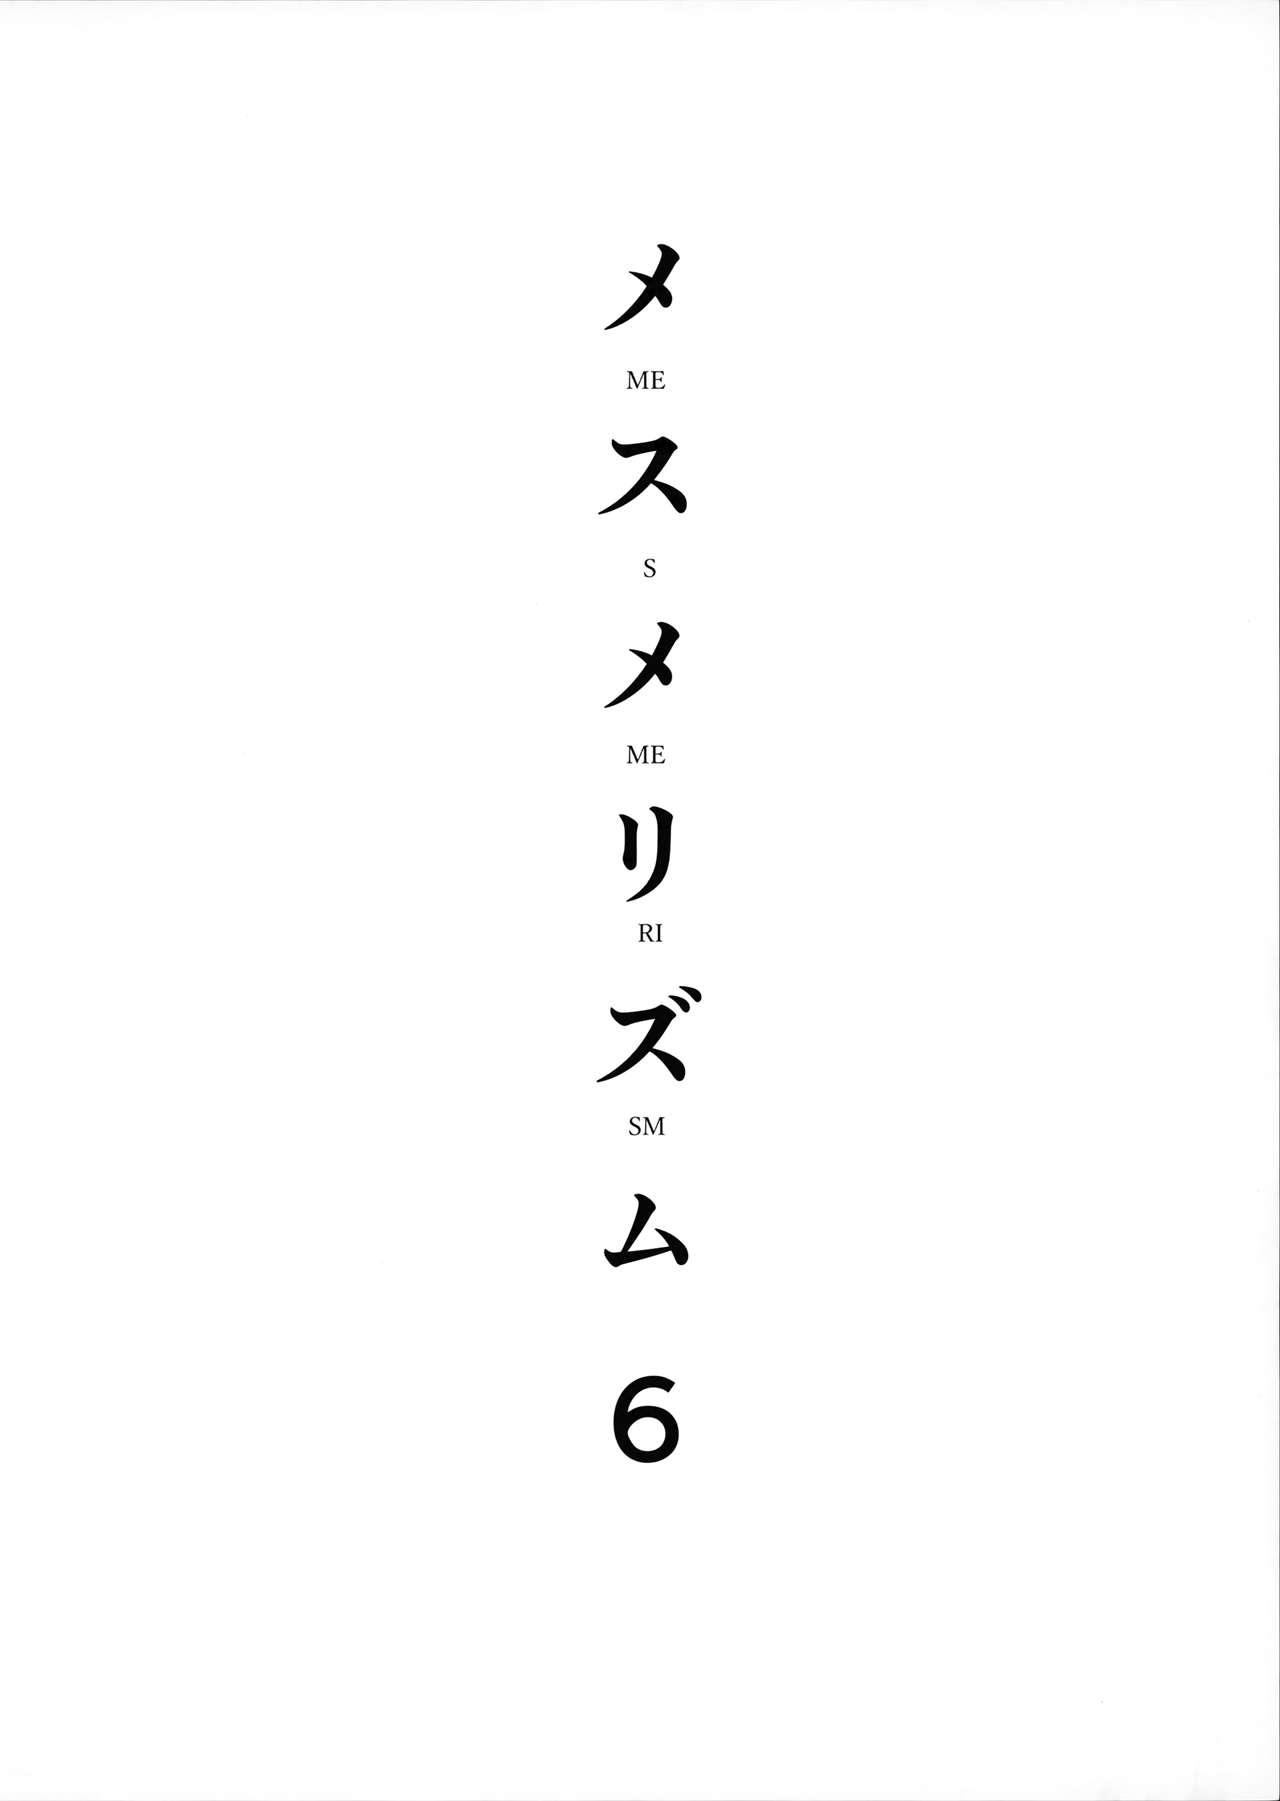 メスメリズム6(C96) [abgrund (さいかわゆさ)]  [中国翻訳](36页)